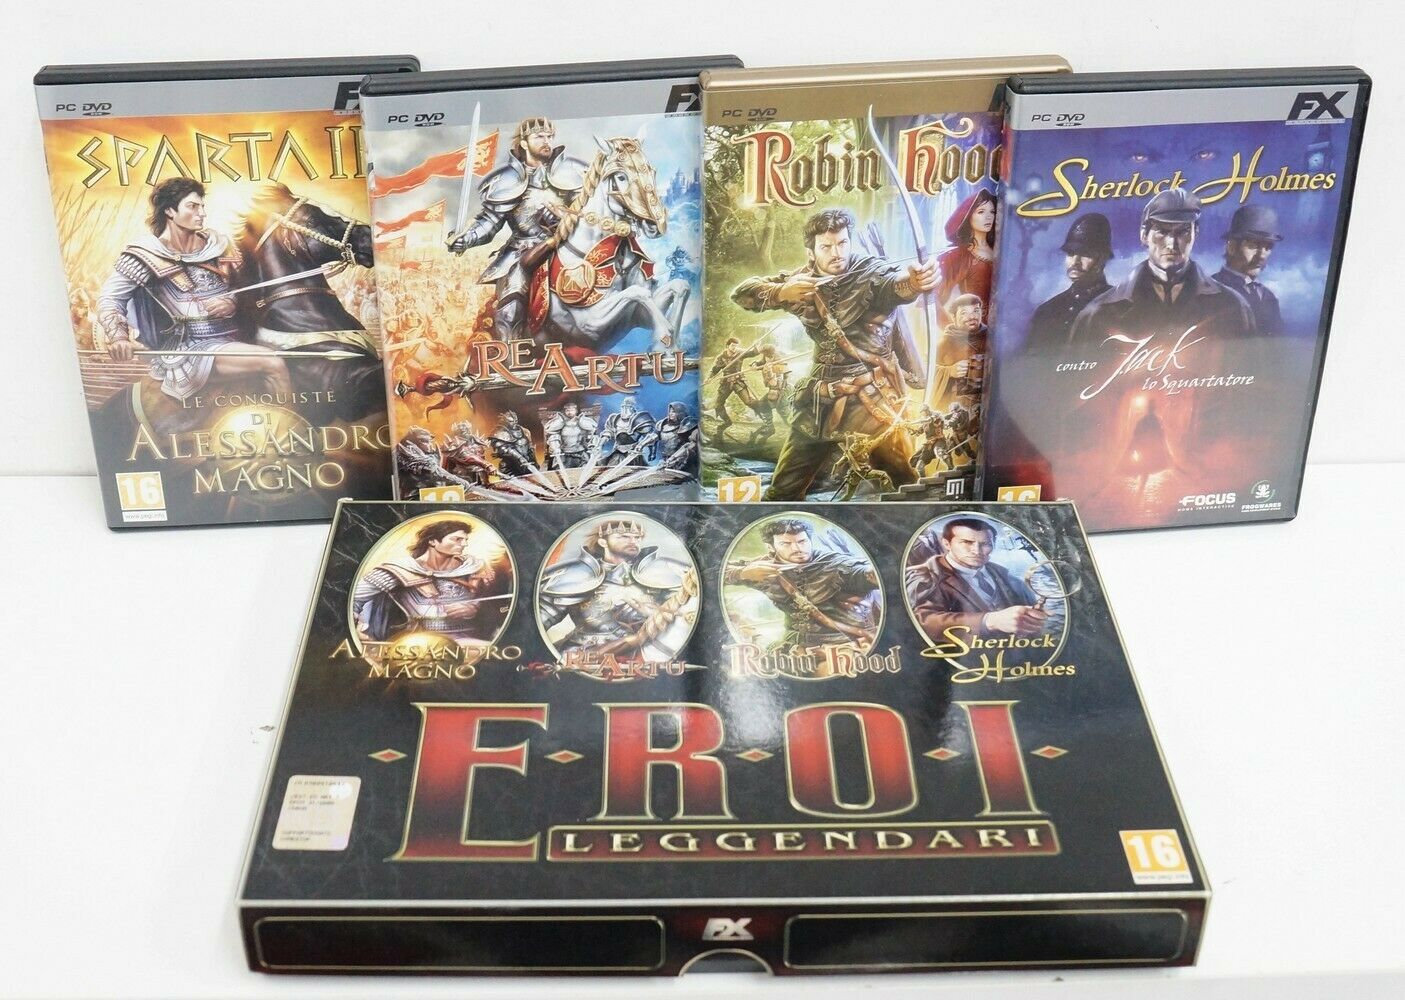 Eroi Leggendari Deluxe – Videogioco PC Big Box (4 dischi) – Emporio di milo